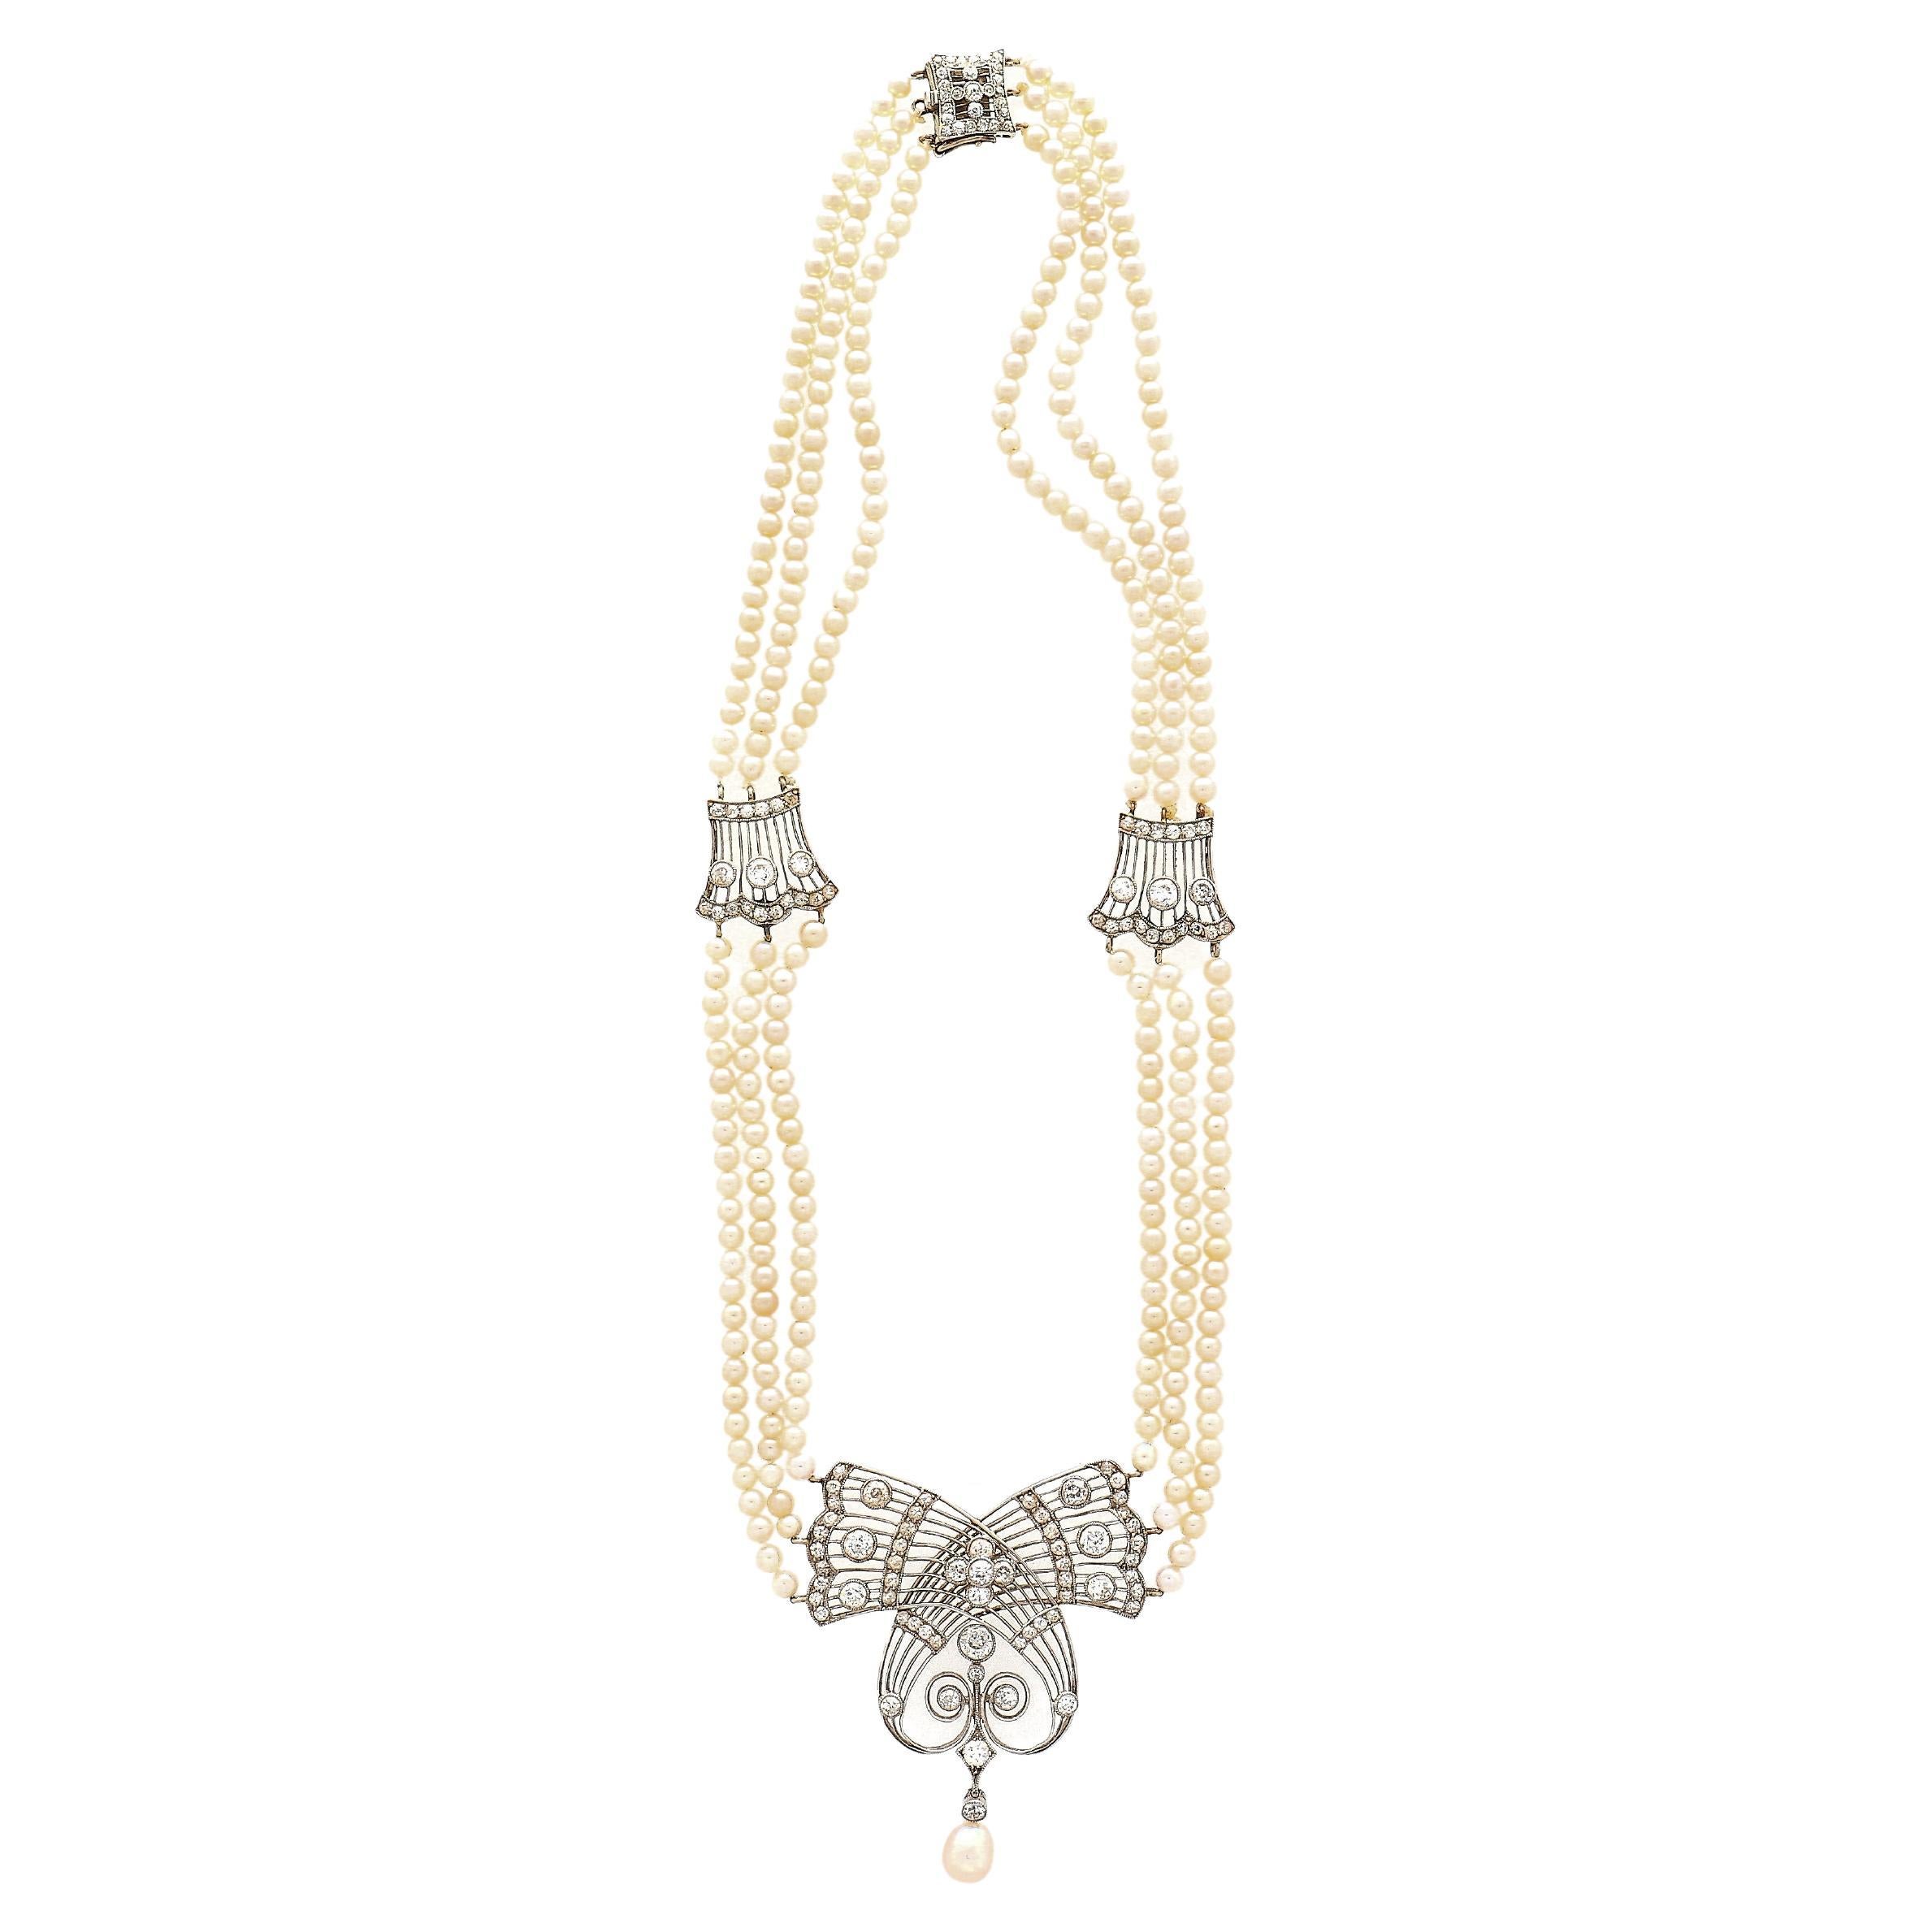 Original antike Edwardian Ära GIA zertifiziert Salzwasser Perle und Diamant-Halskette in einer Platin-Fassung. Die Perlen sind alle natürlich, unbehandelt und haben einen hervorragenden Glanz. Ausgestattet mit einem Kastenverschluss und einer Länge